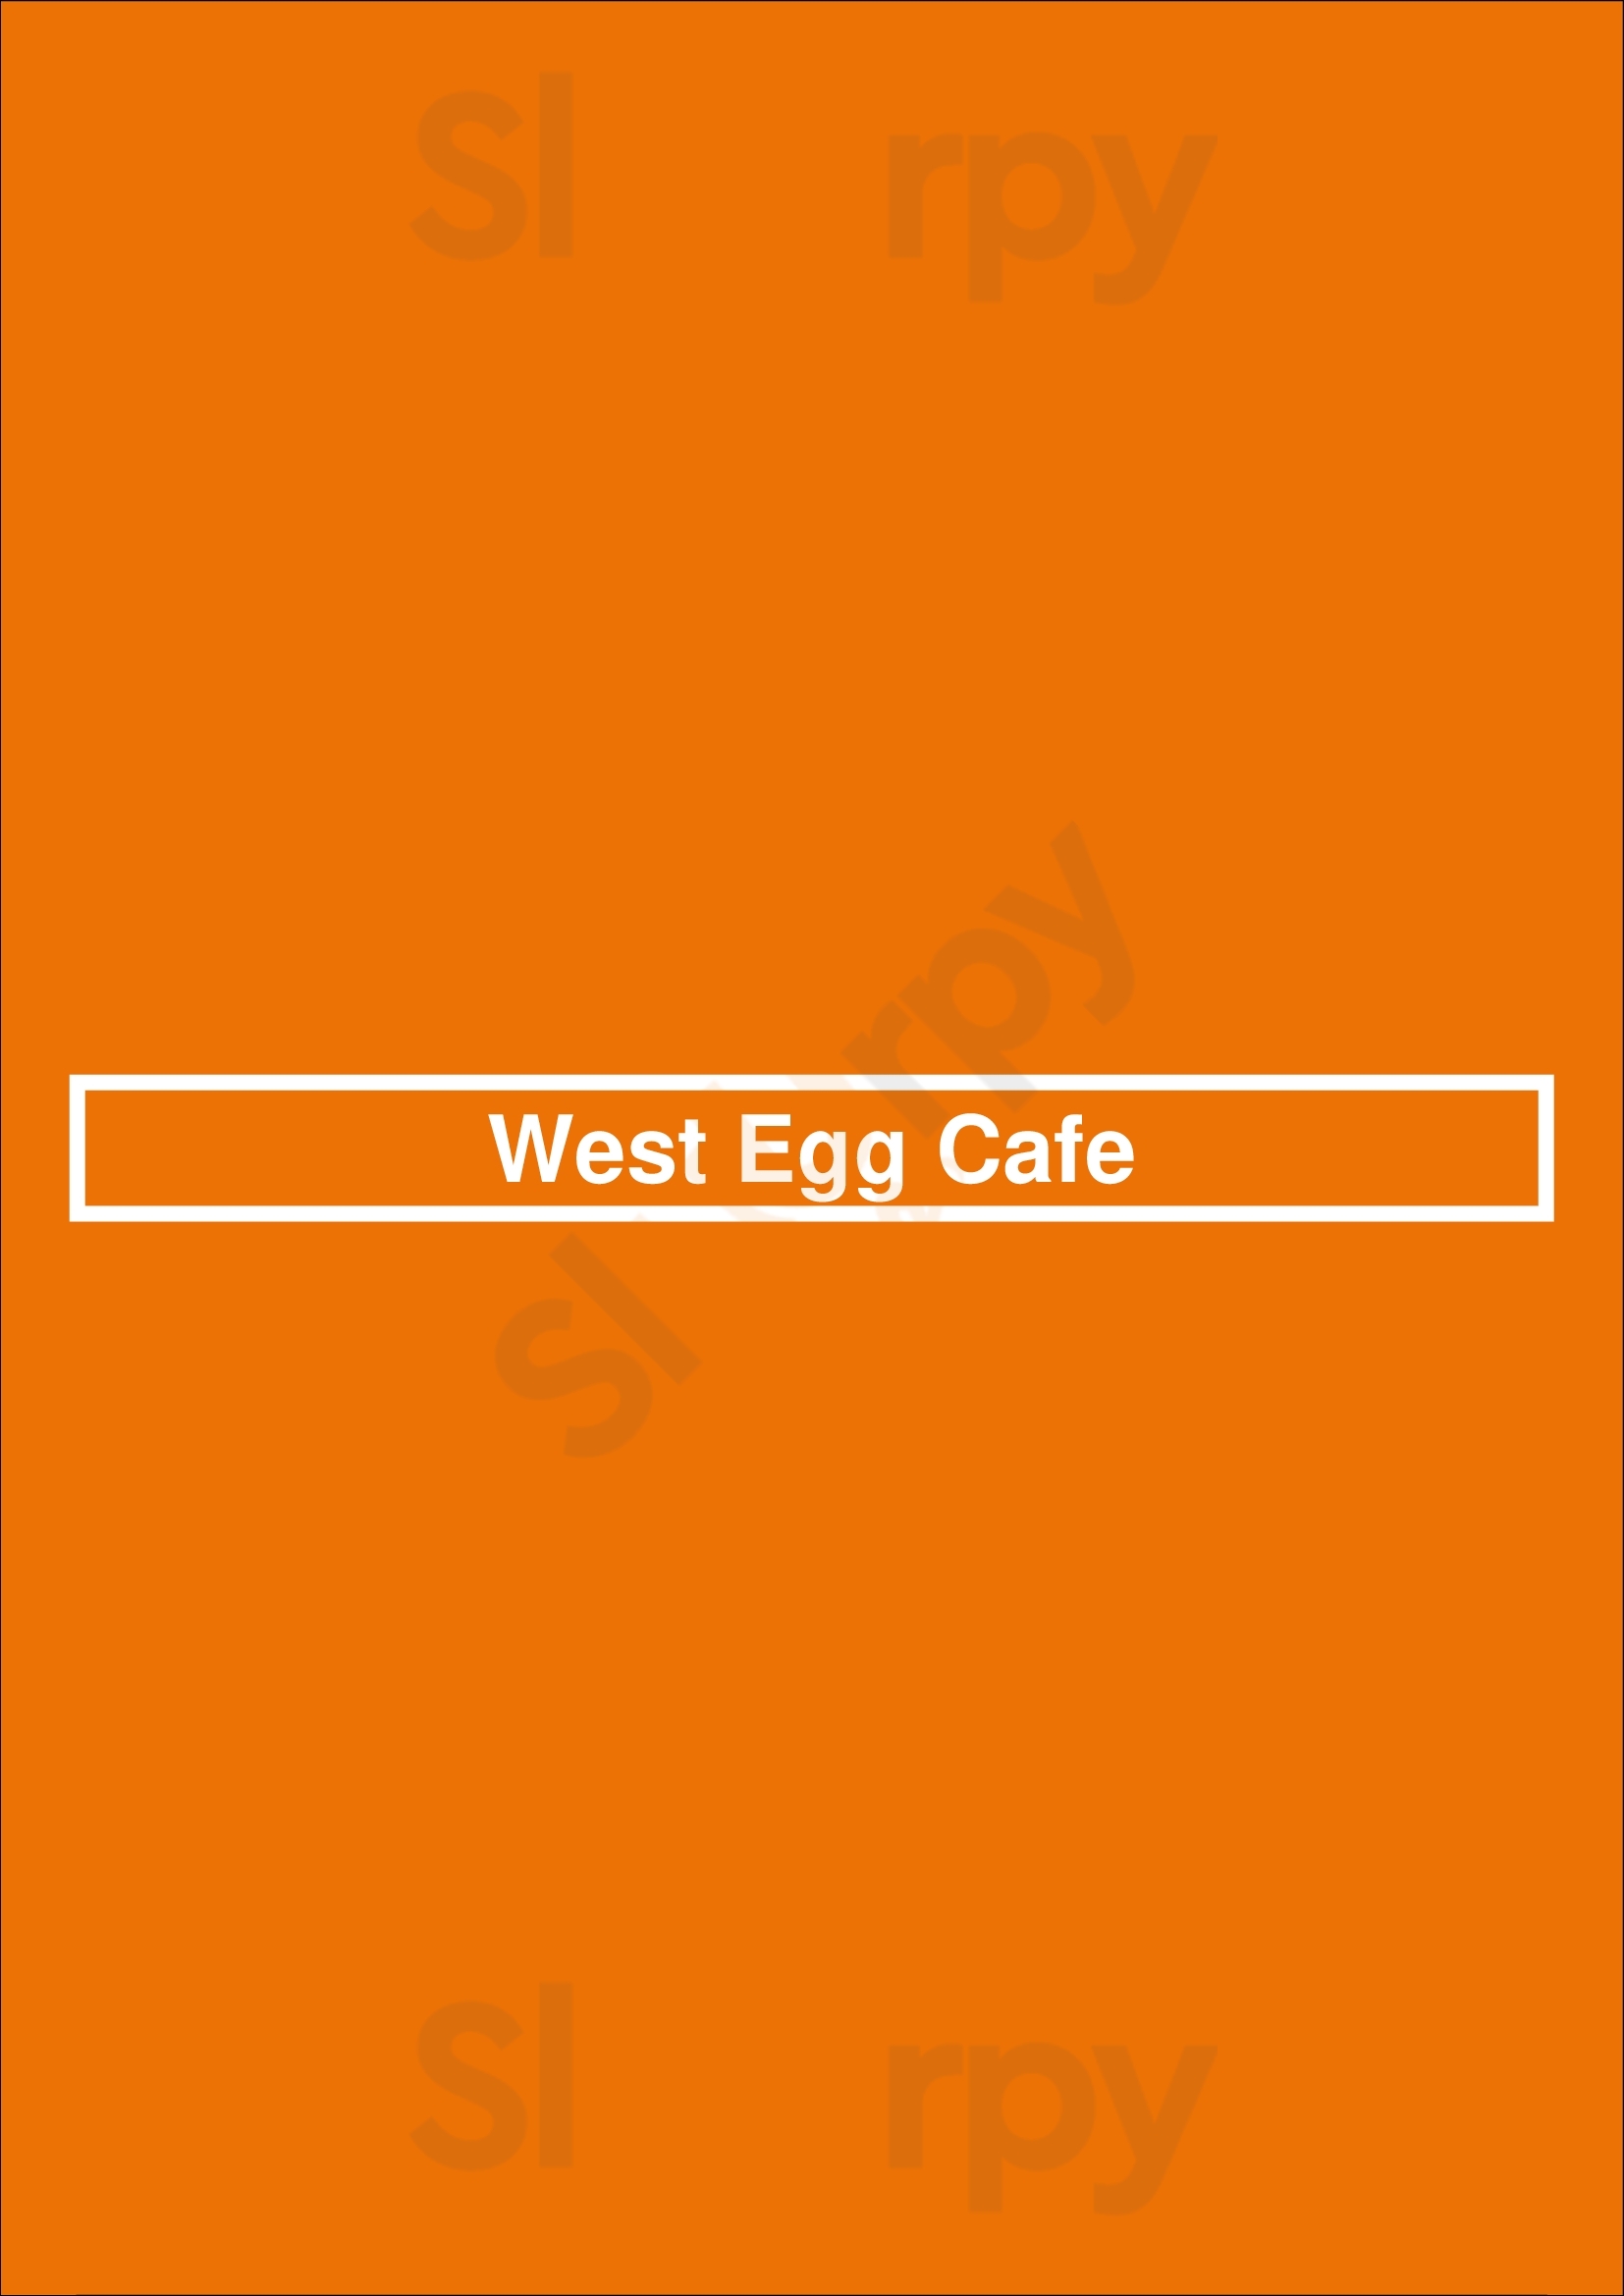 West Egg Cafe Atlanta Menu - 1